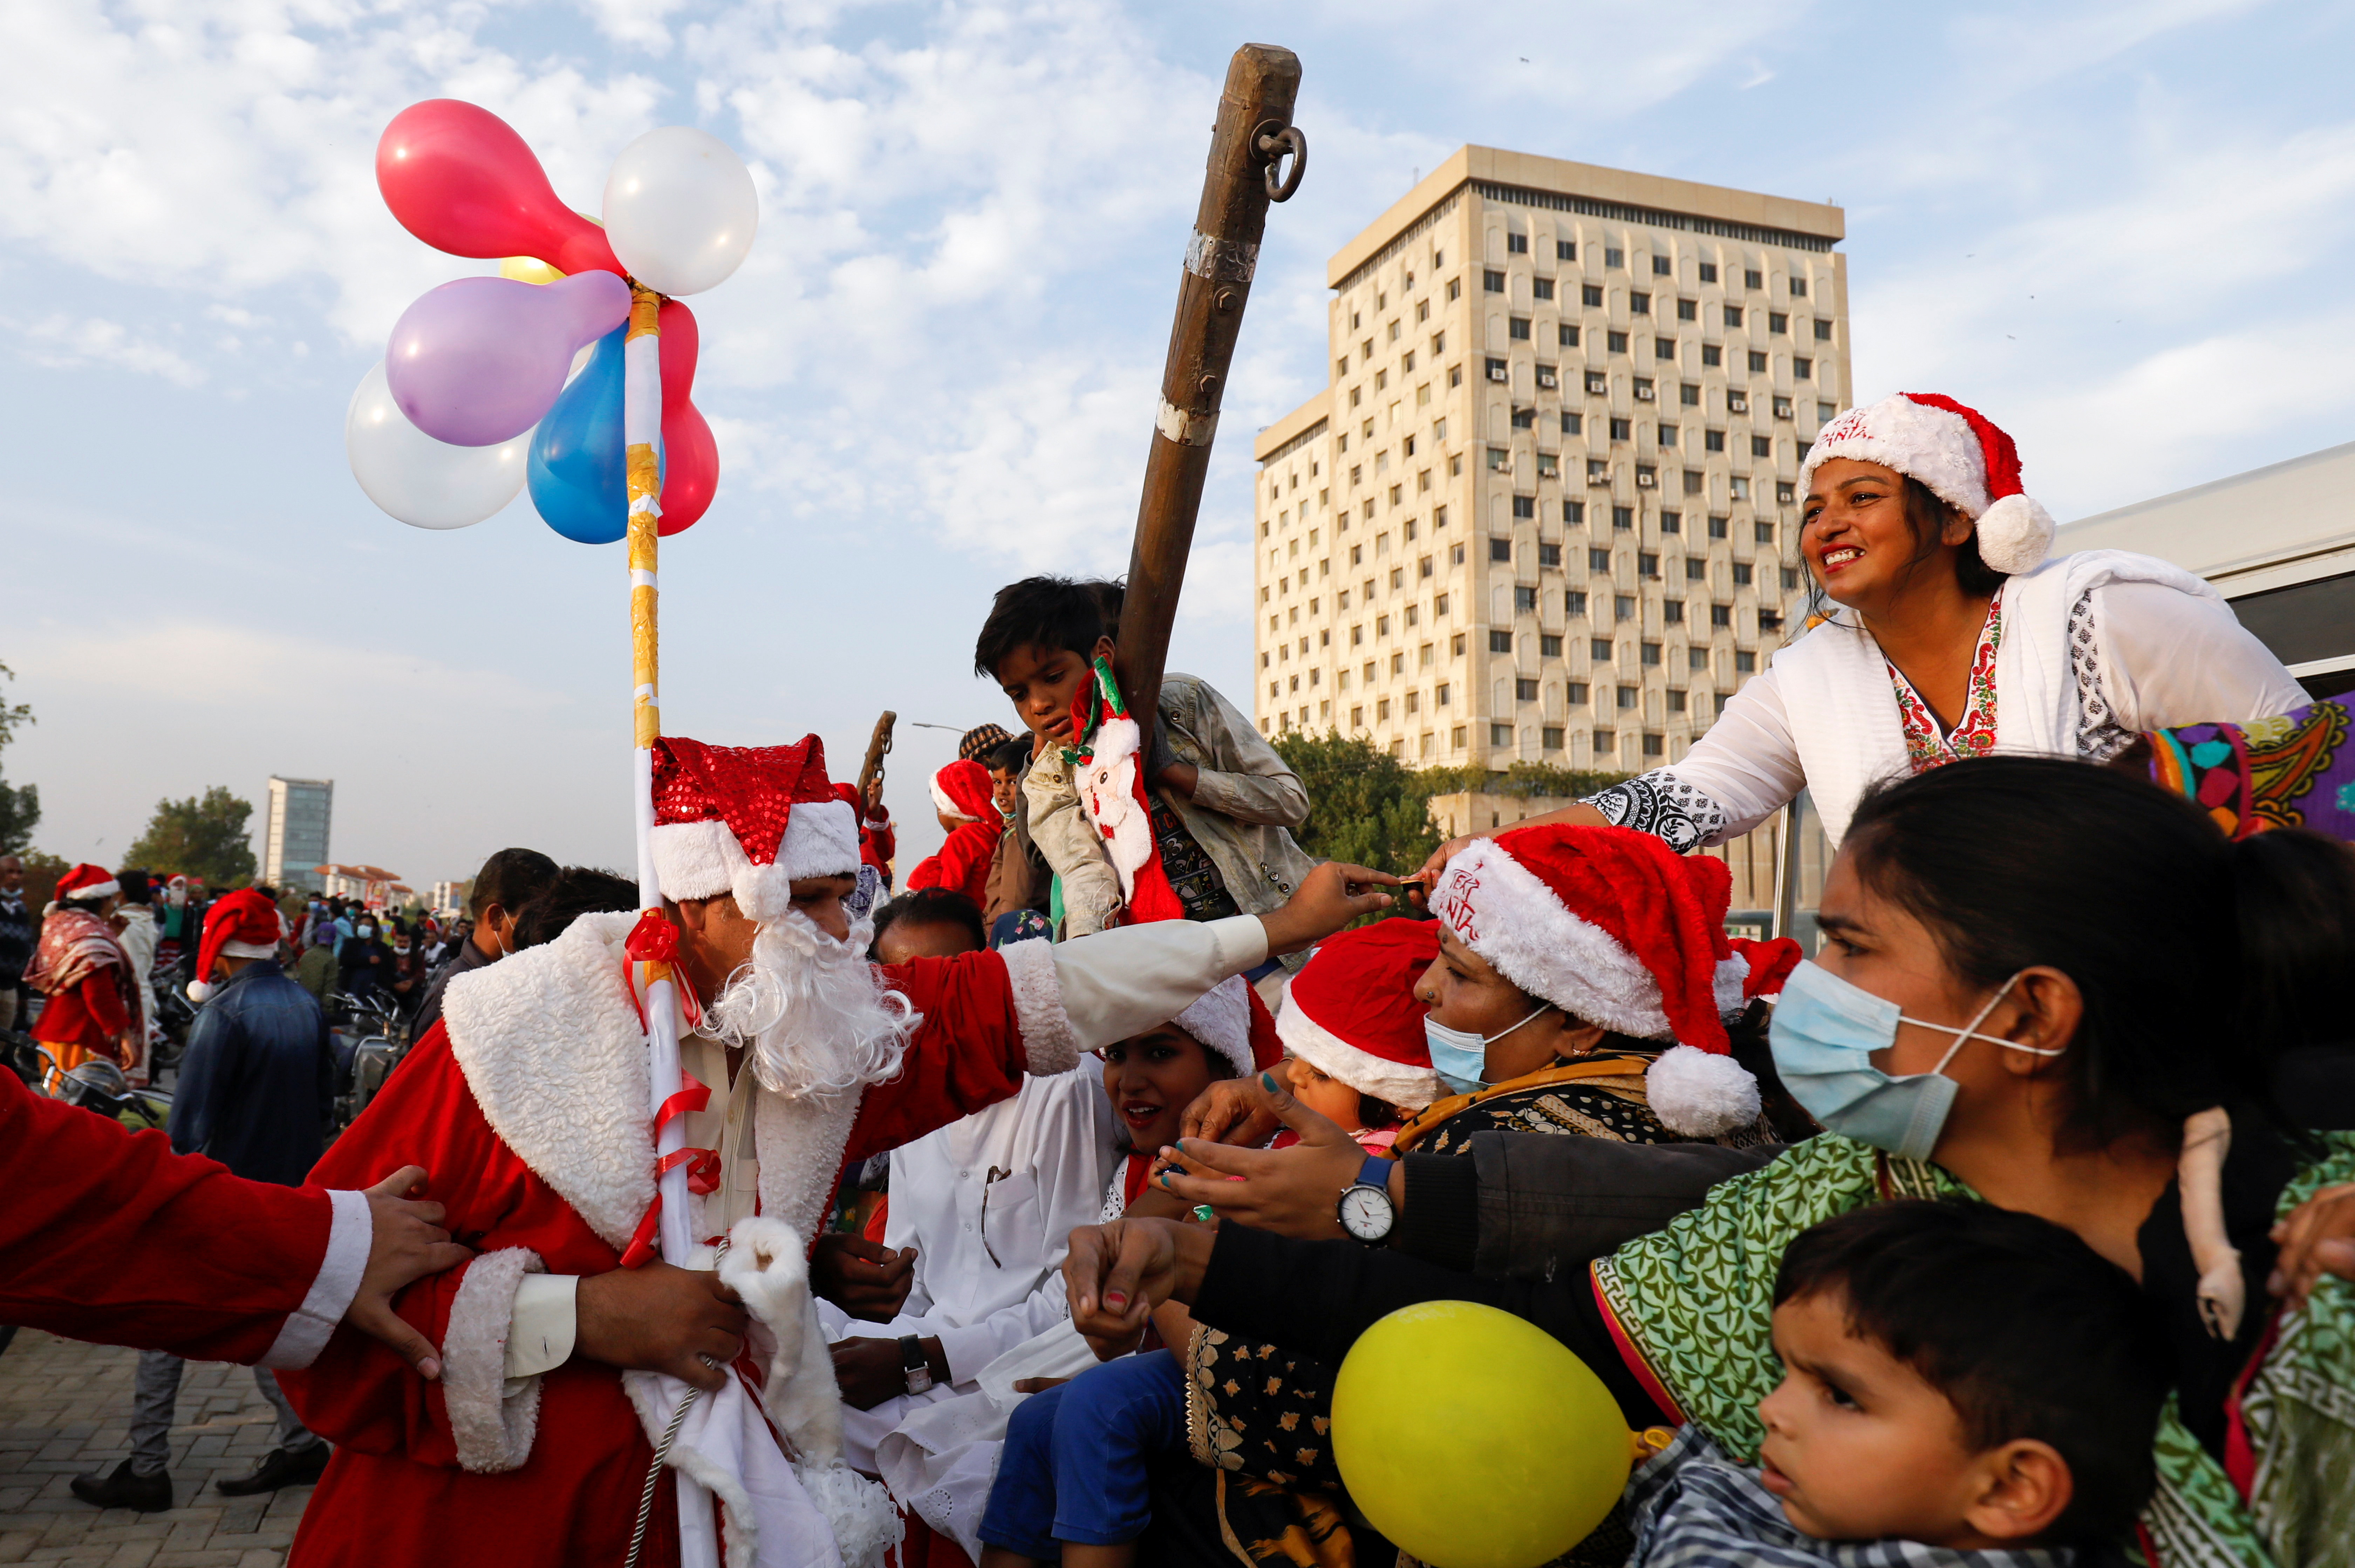 Un hombre vestido con el traje de Papá Noel distribuye dulces entre la gente durante una manifestación por la paz en Karachi, Pakistán (REUTERS/Akhtar Soomro)